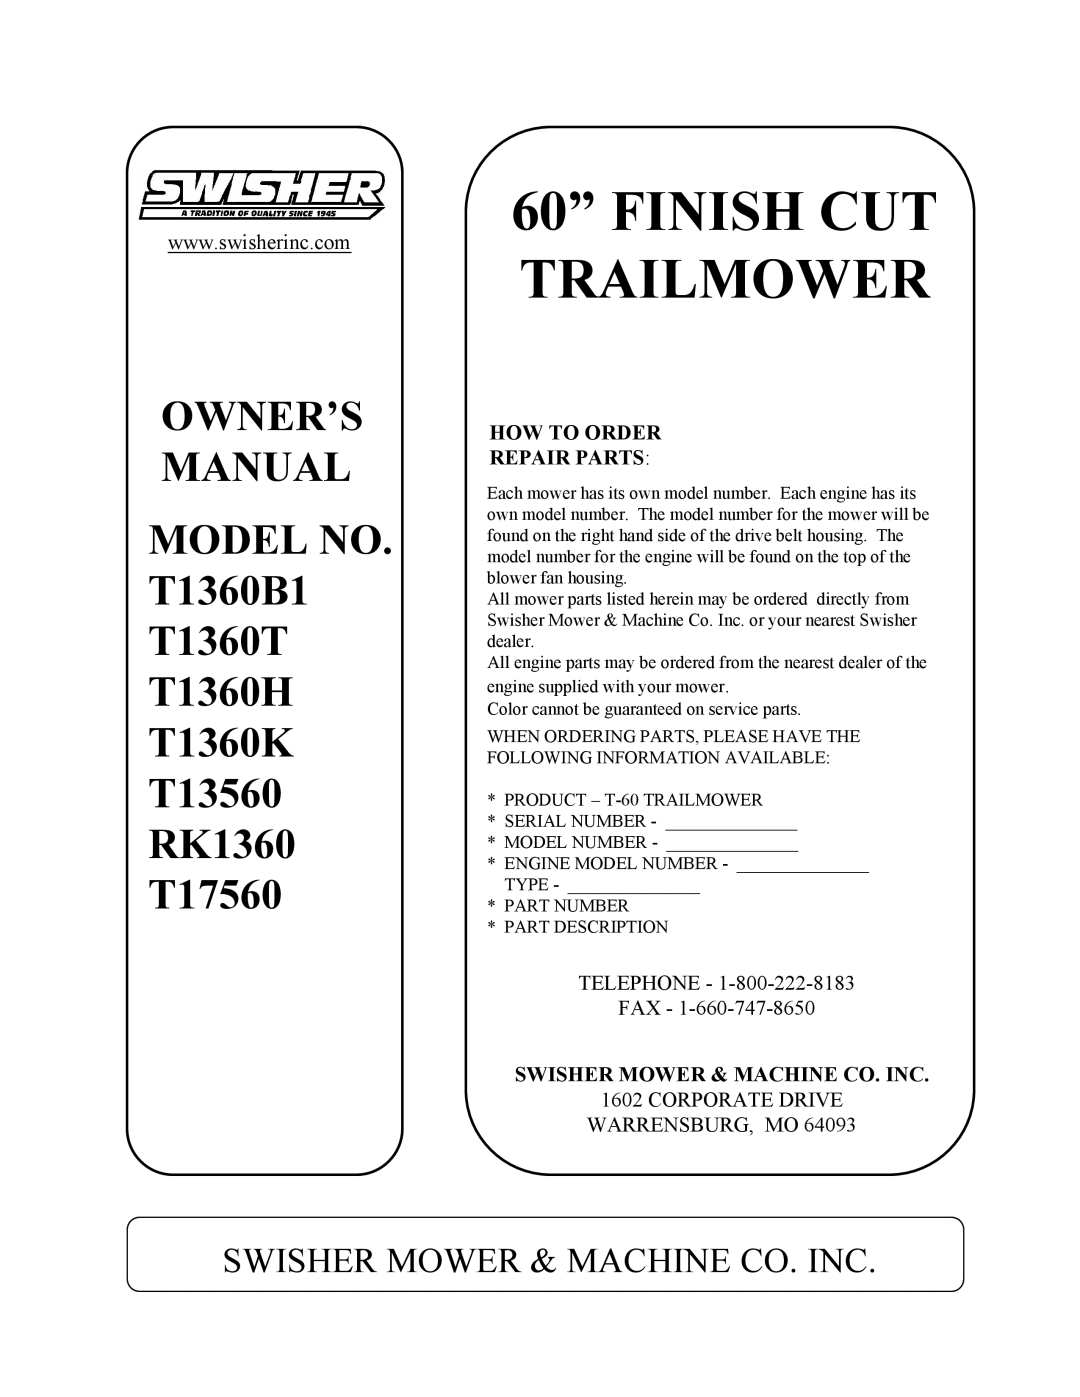 Swisher owner manual MODEL NO. T1360B1 T1360T T1360H T1360K T13560 RK1360 T17560, Swisher Mower & Machine Co. Inc 